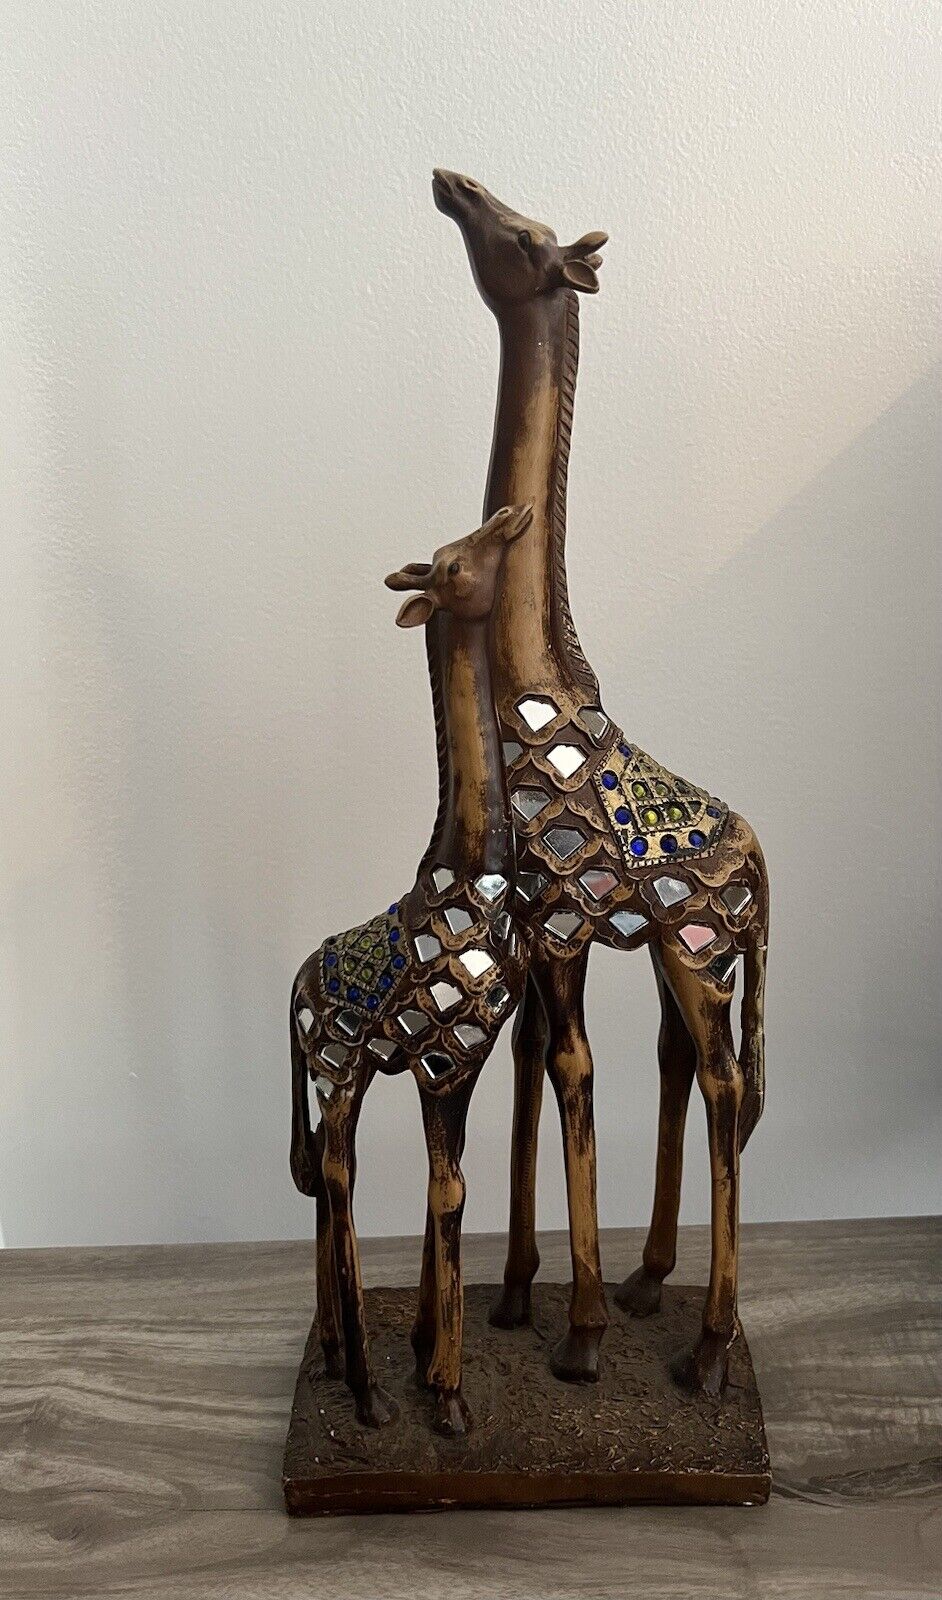 Resin Momma Giraffe and Baby Giraffe Mirrored and Rhinestone Designs